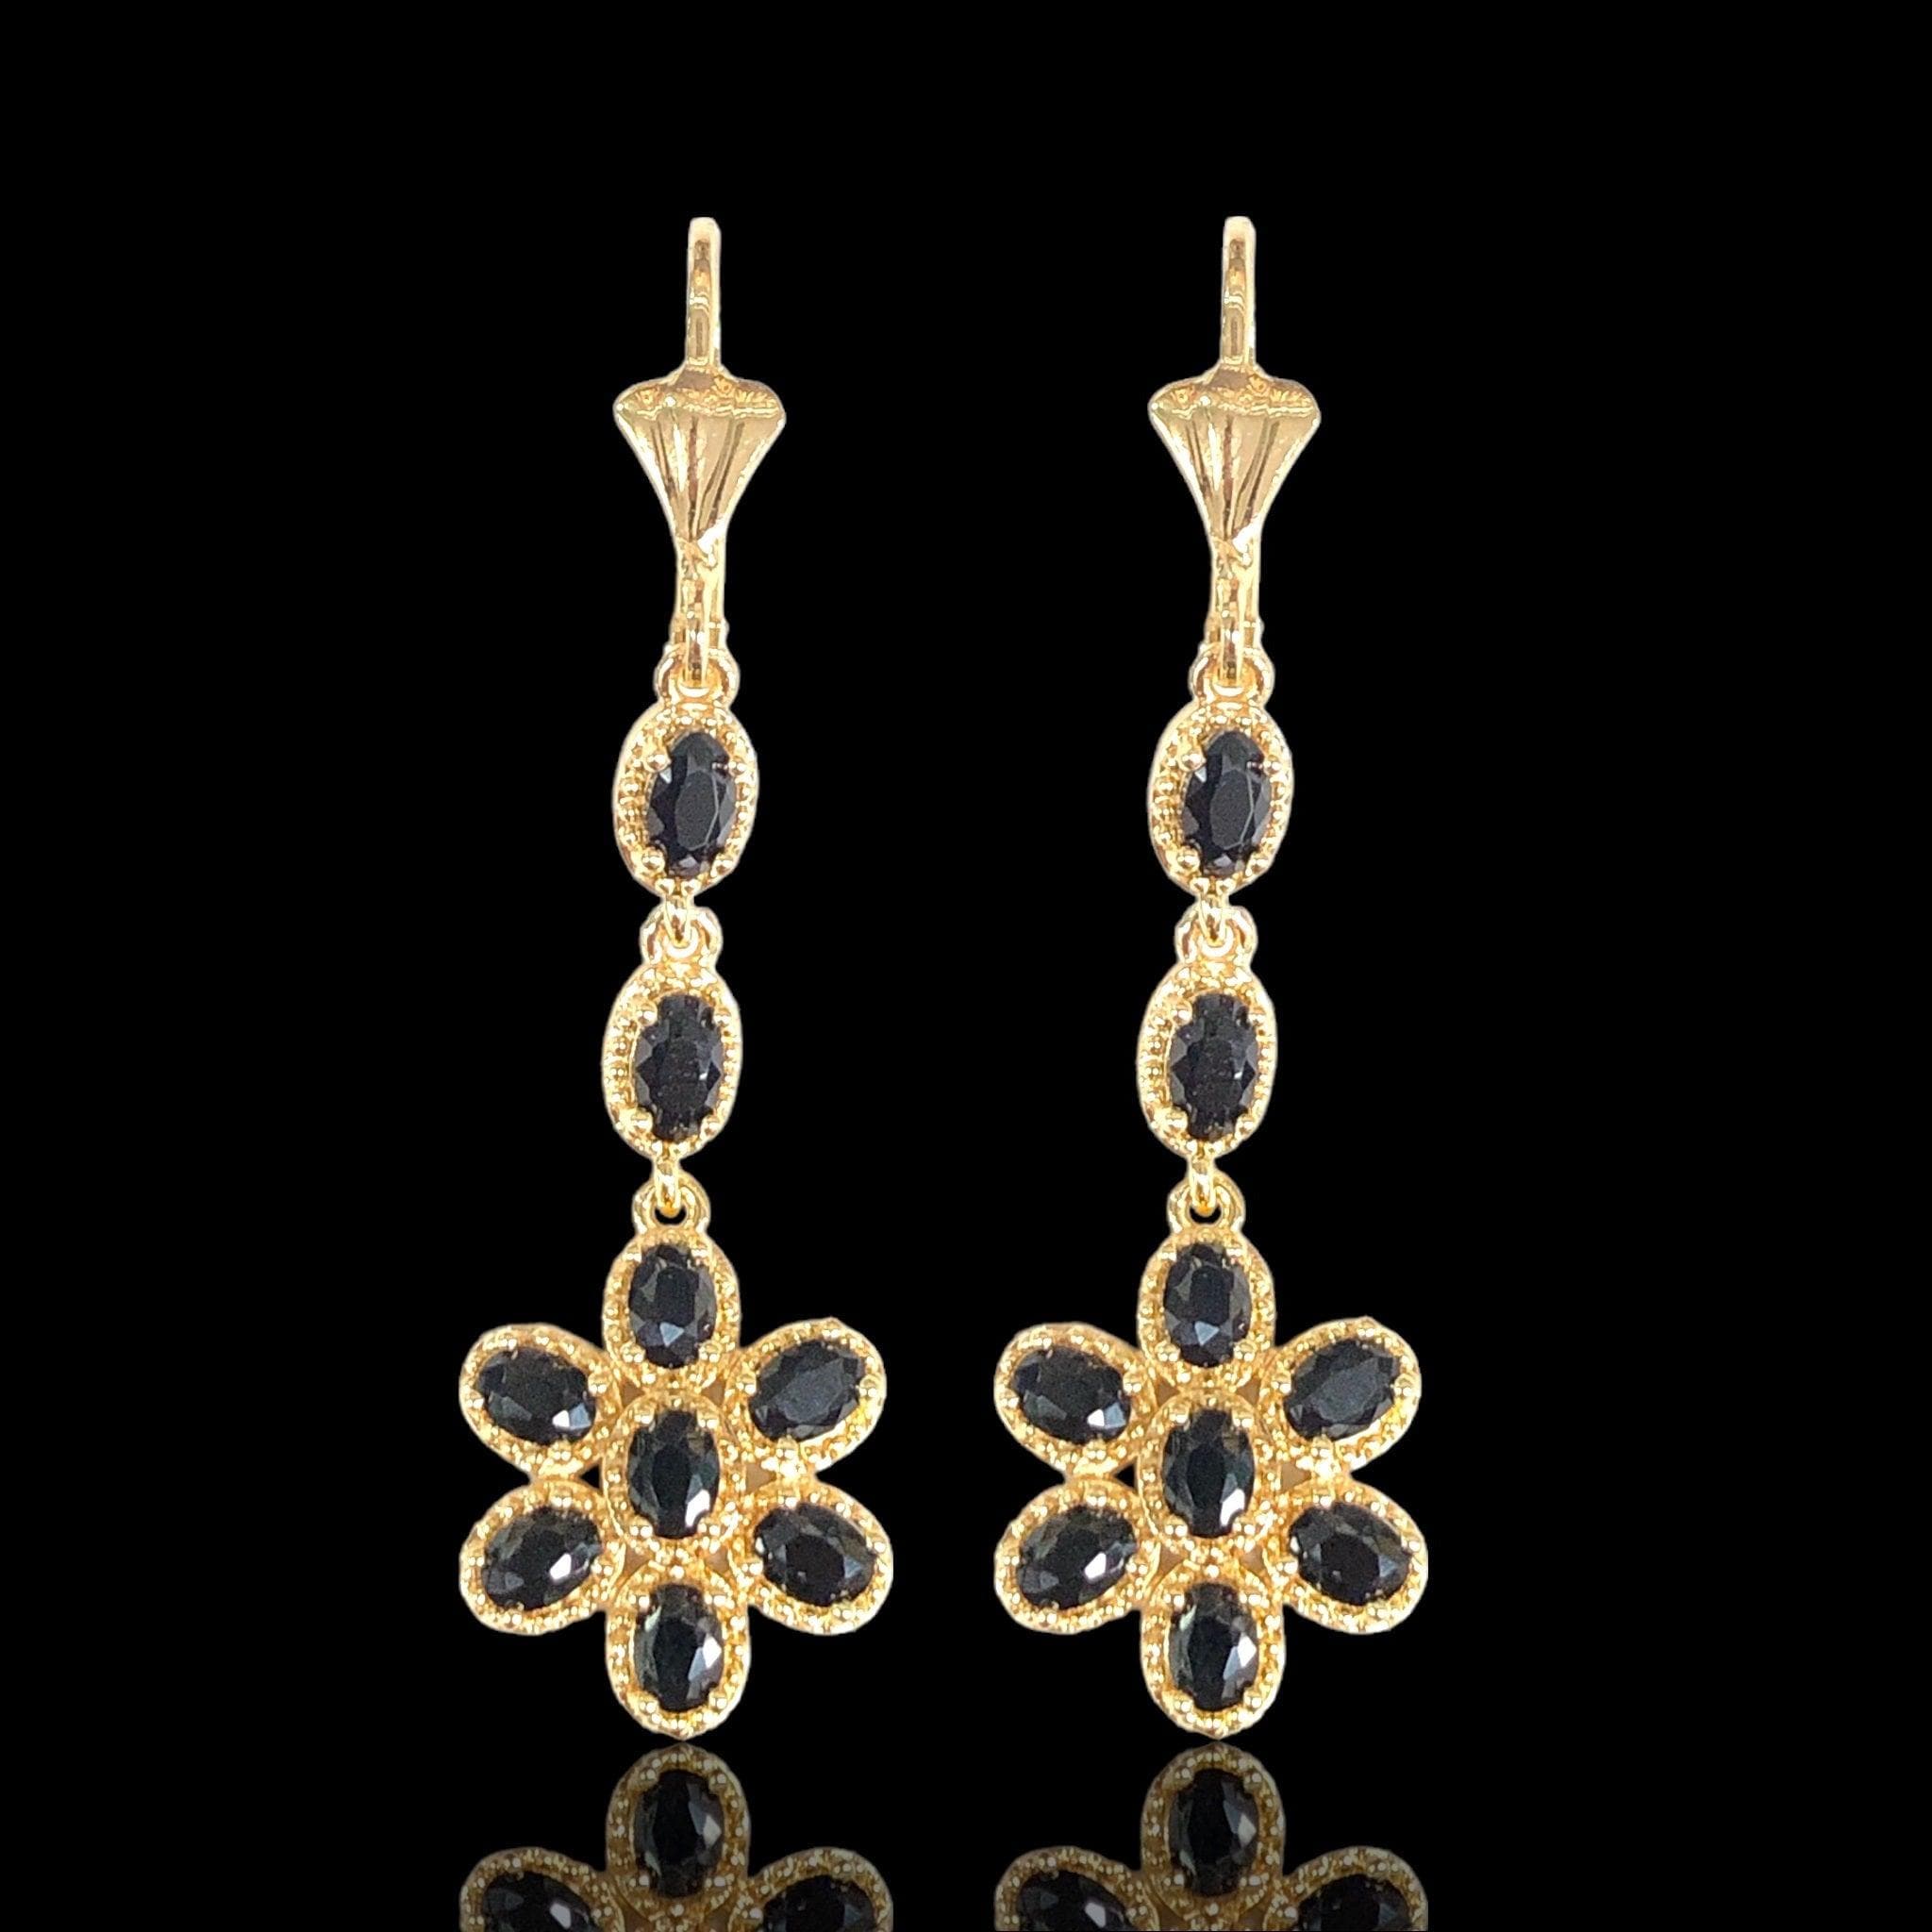 OLE 0634 18K Gold Filled Sun Flower CZ Dangle Earrings- KUANIA ORO LAMINADO